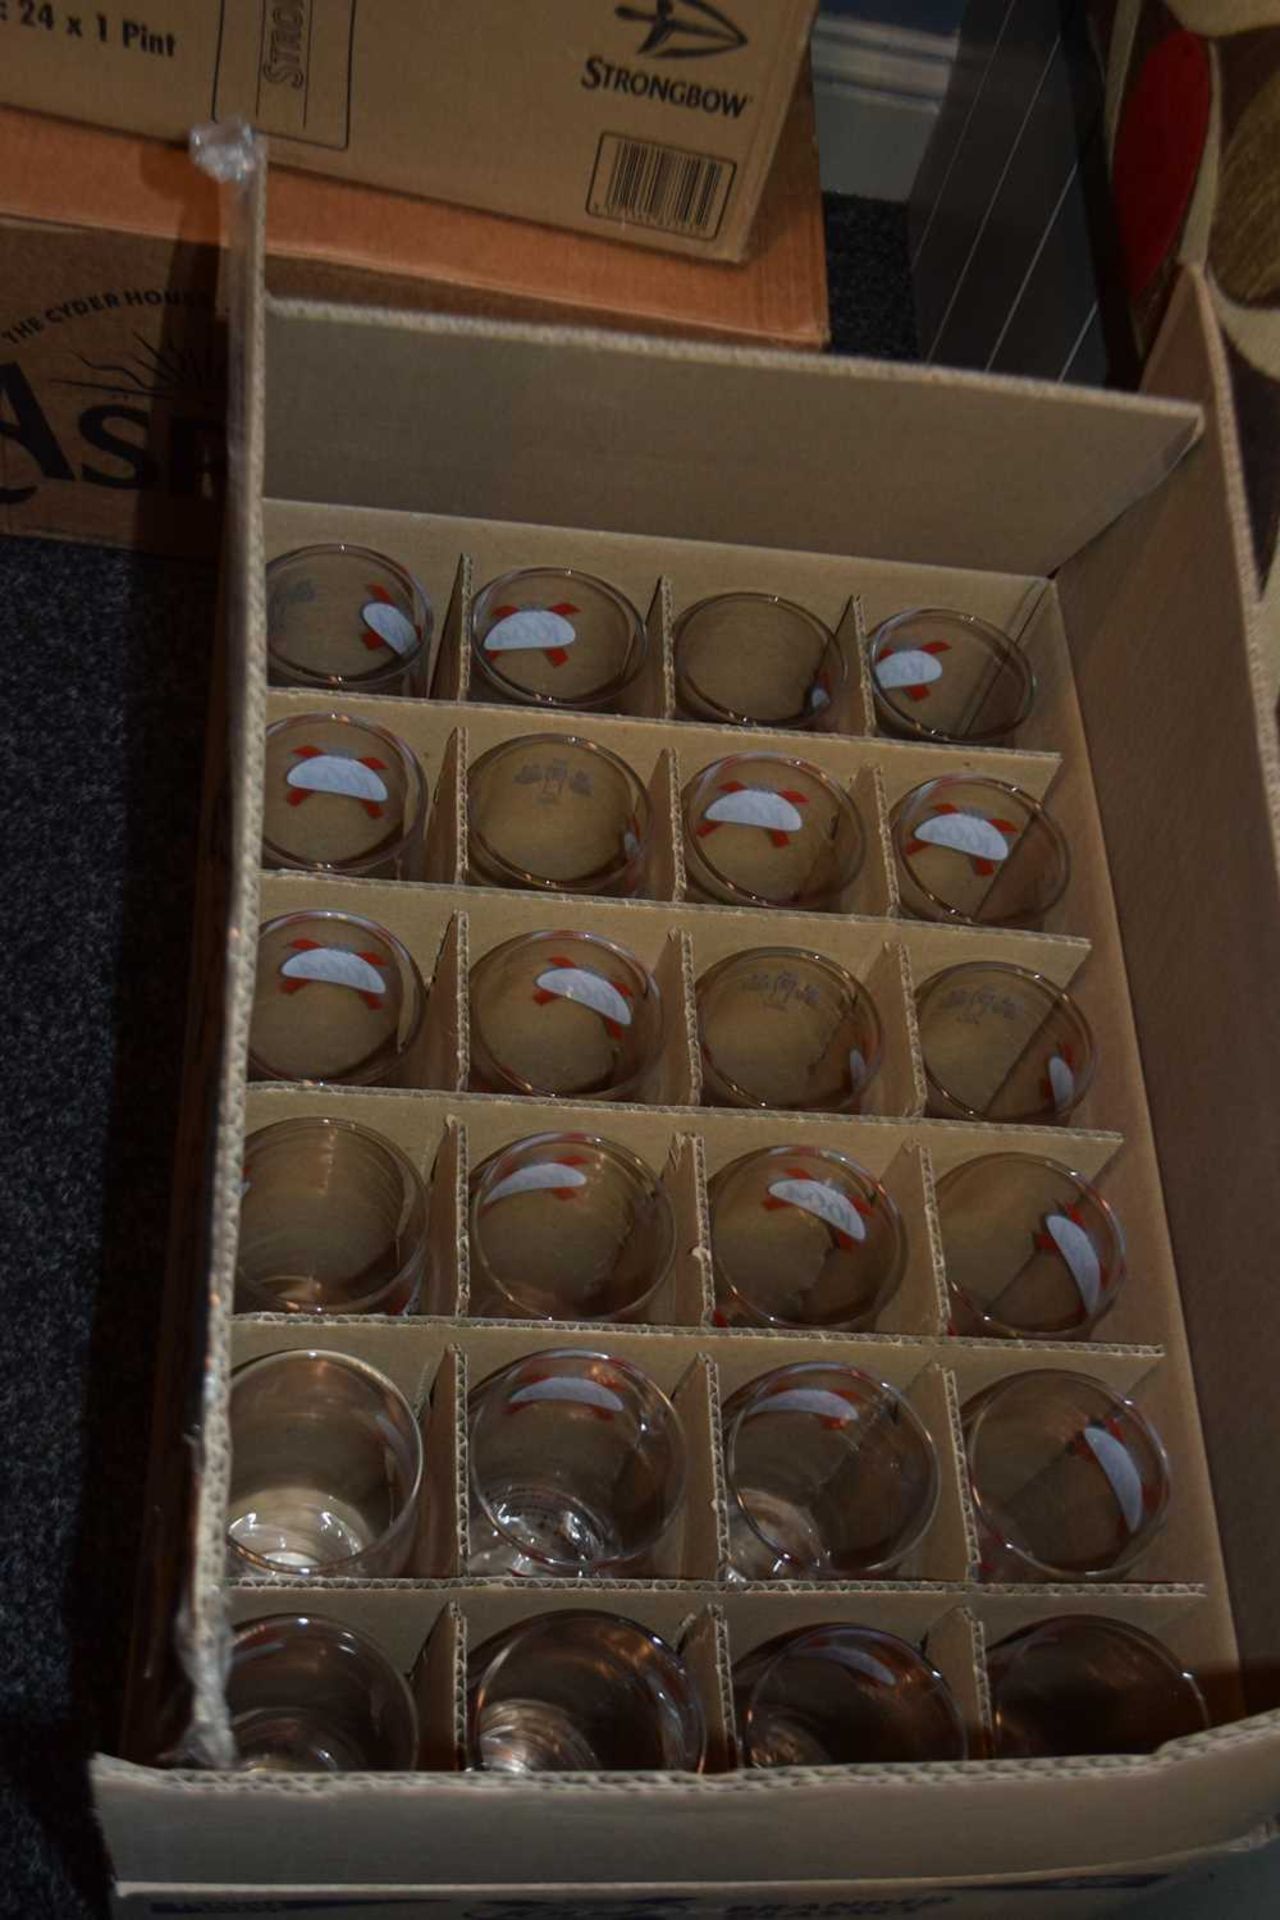 Box of 24 branded Kronenbourg pint glasses